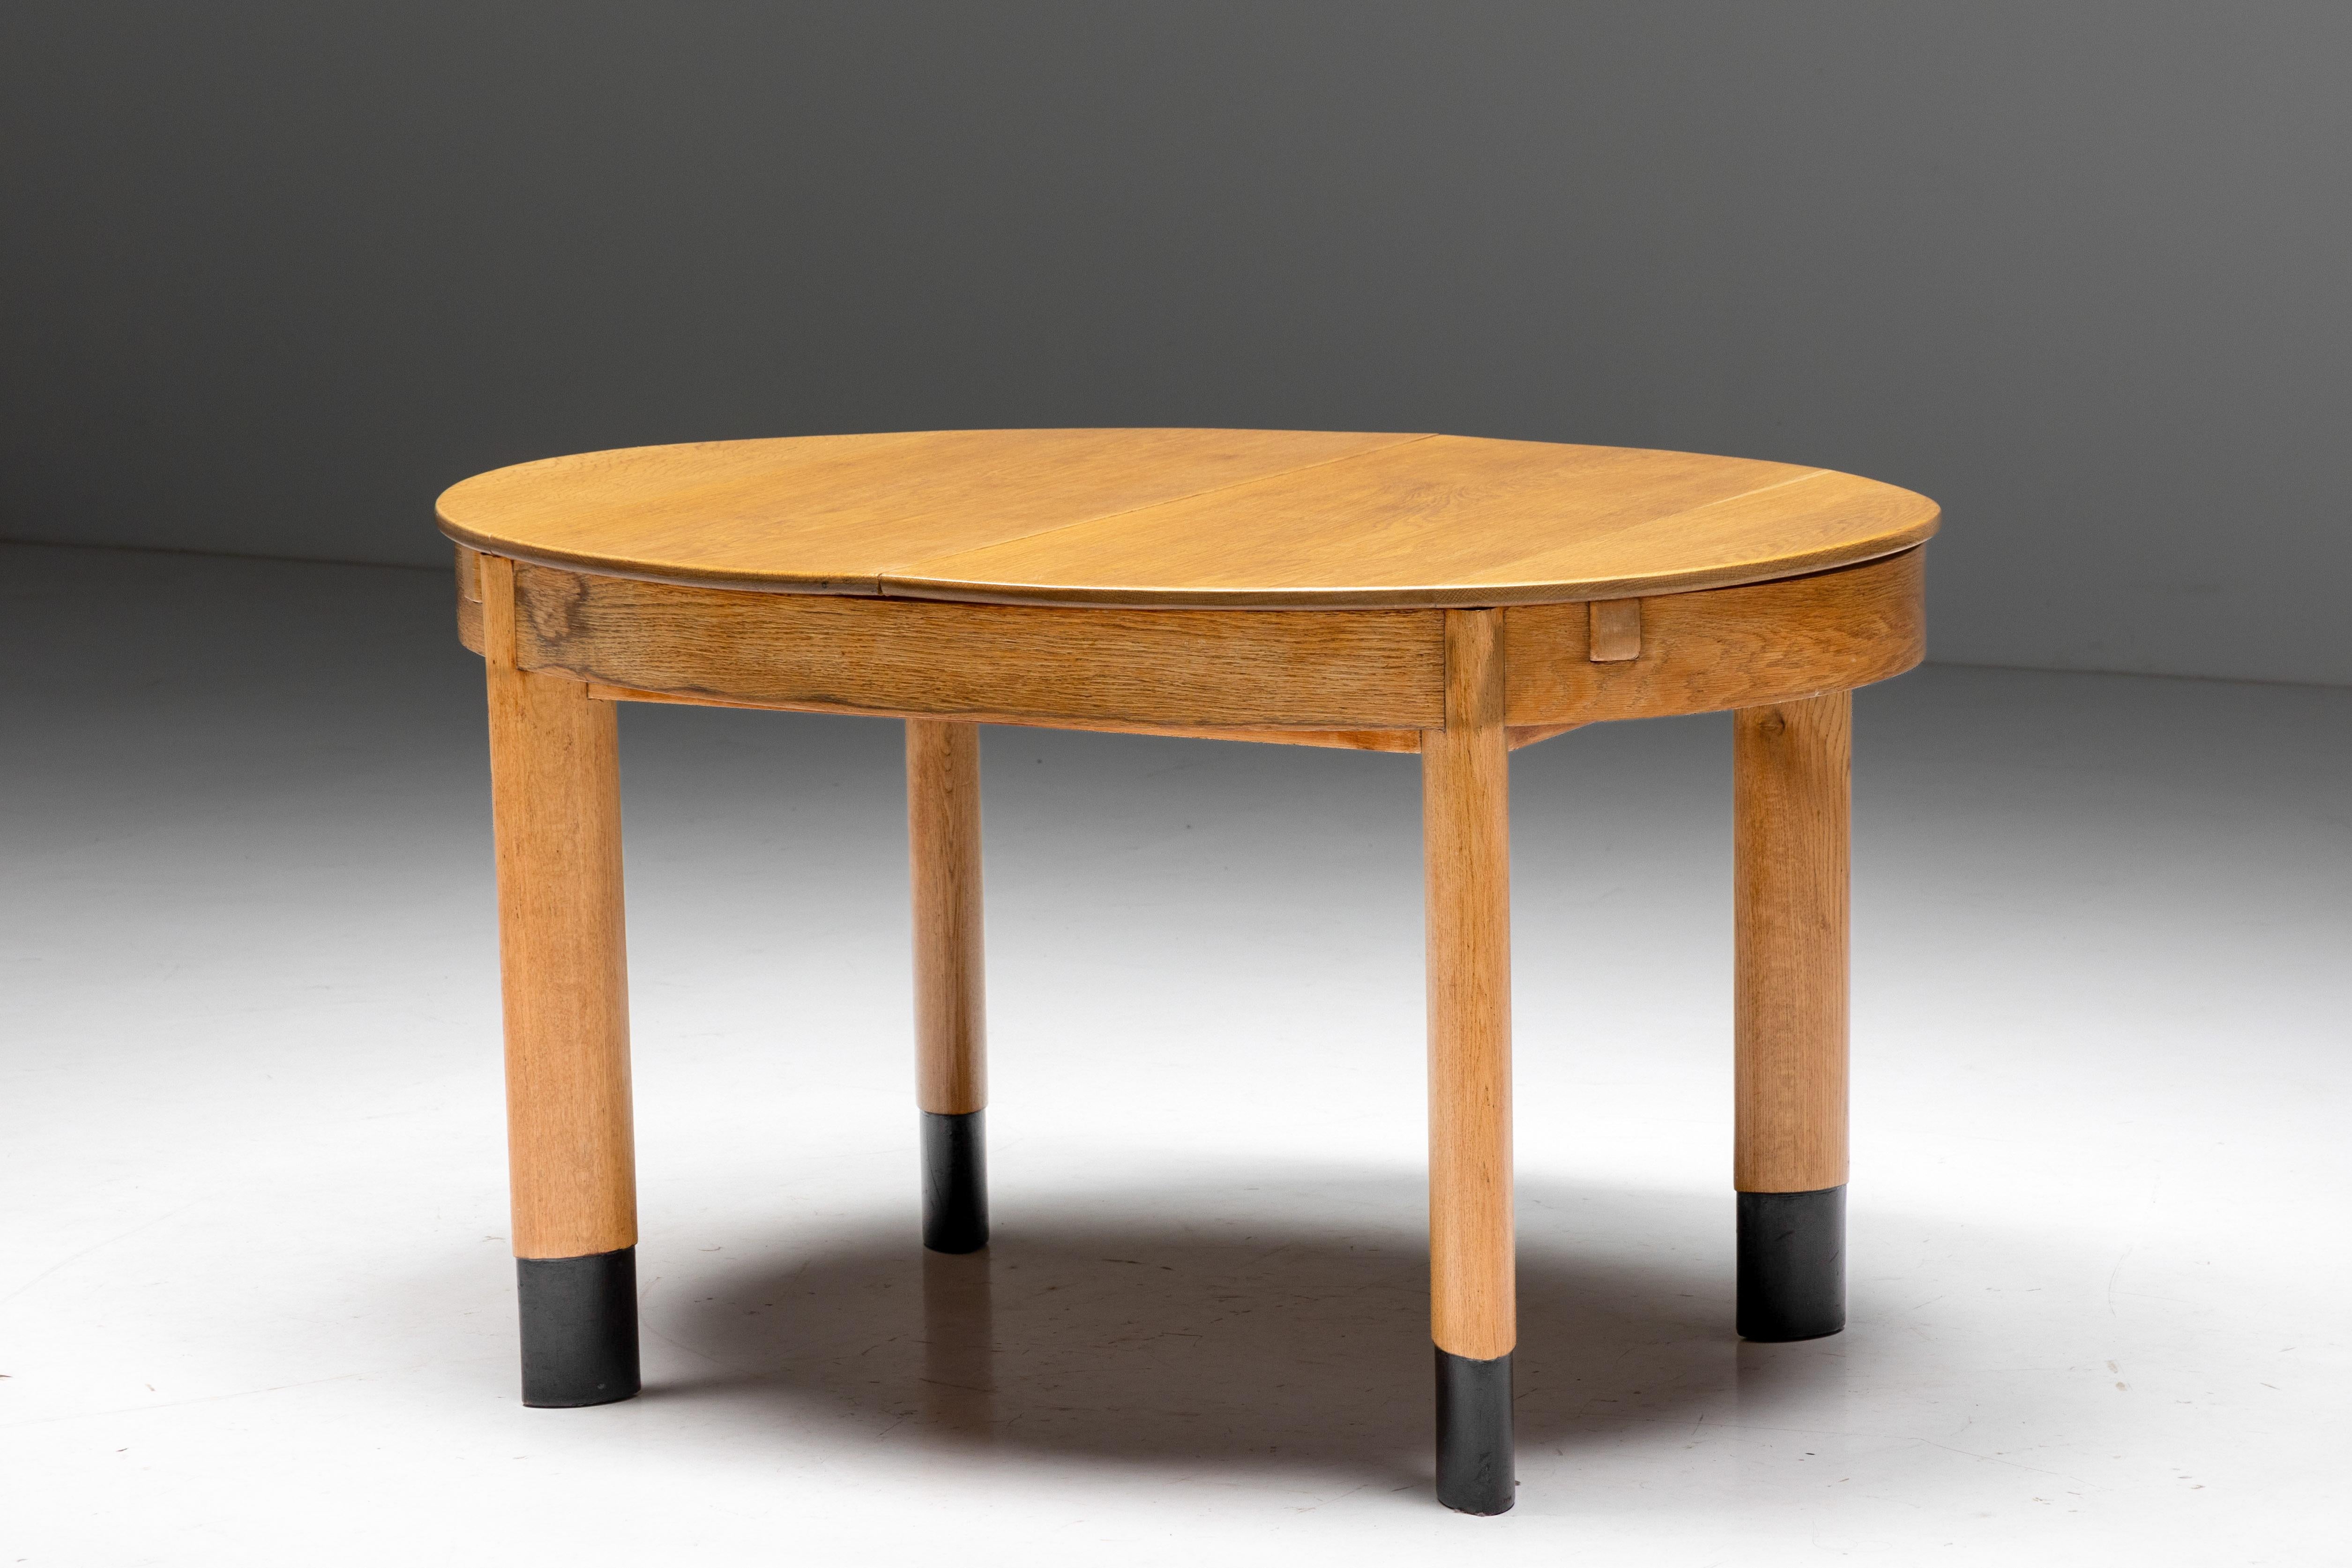 Table de salle à manger ovale en chêne, sur pieds ovales juxtaposés, néerlandais, années 1920

Une pièce aussi minimaliste et moderne pour l'époque. Deux formes elliptiques suivant un axe juxtaposé témoignent d'une grande connaissance des